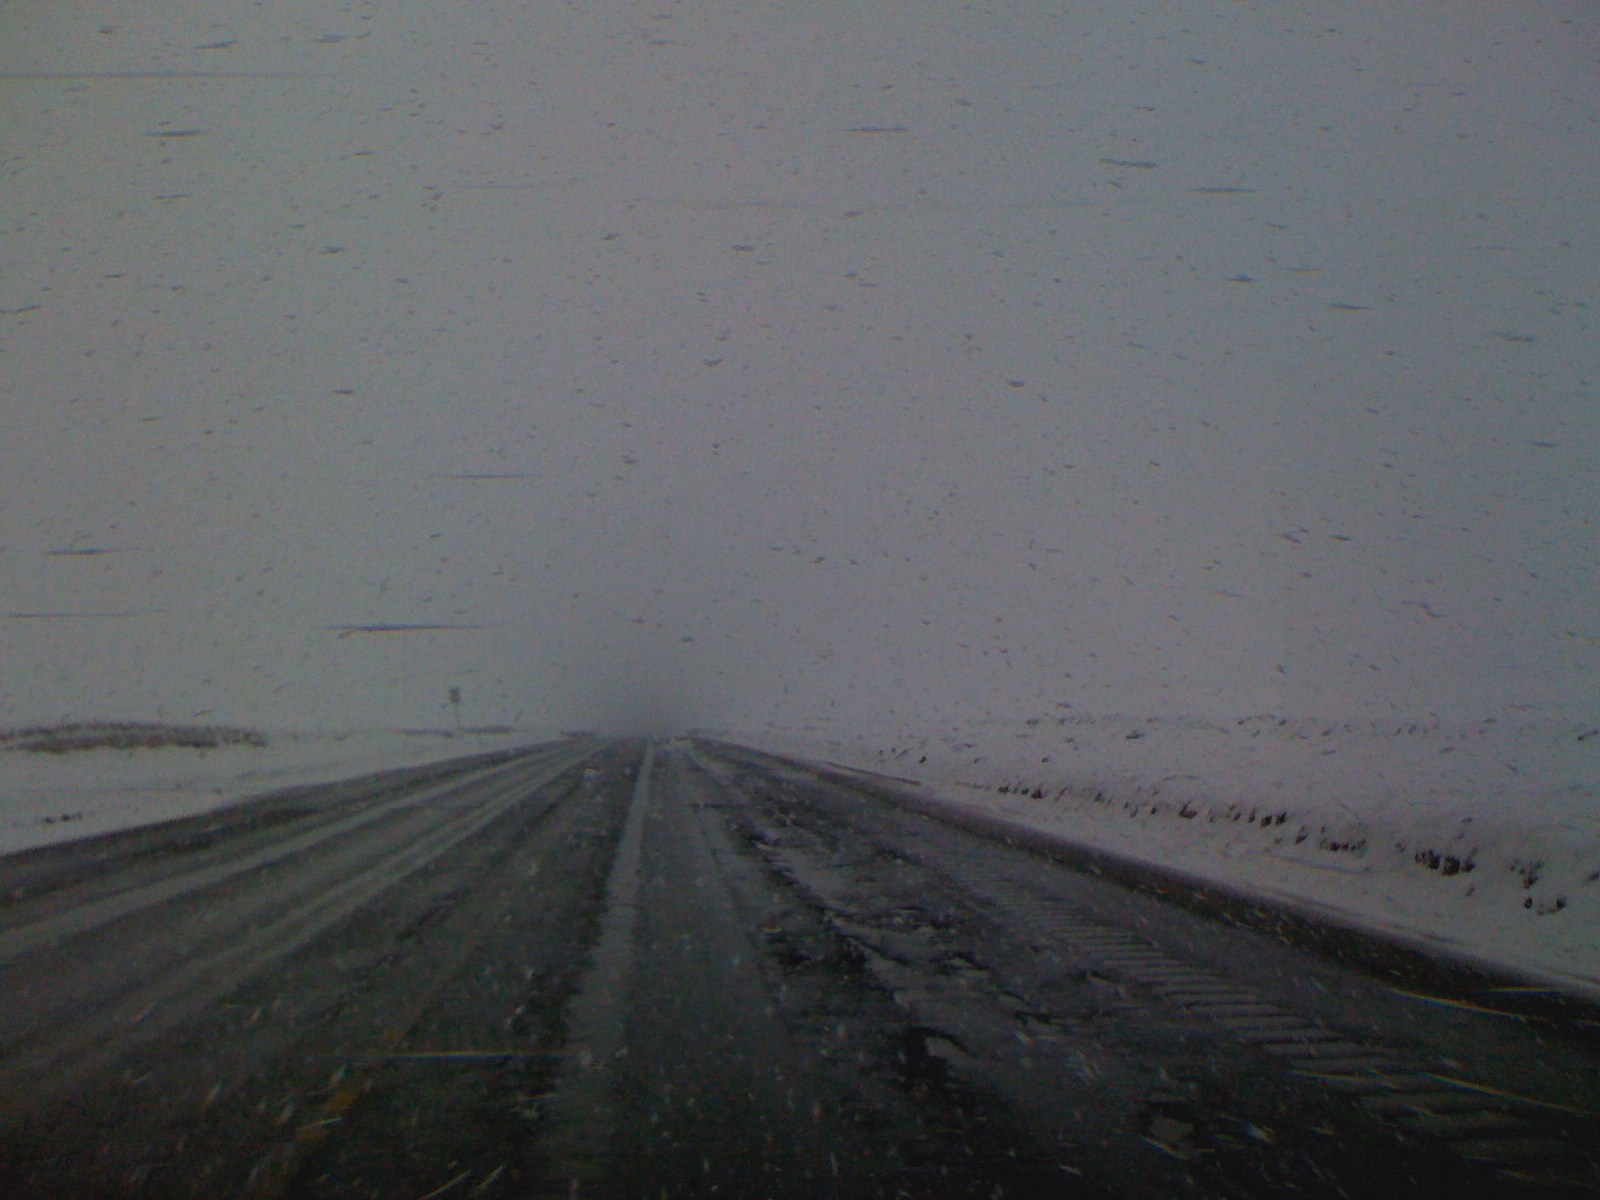 A blinding snowstorm on an Alaska road.